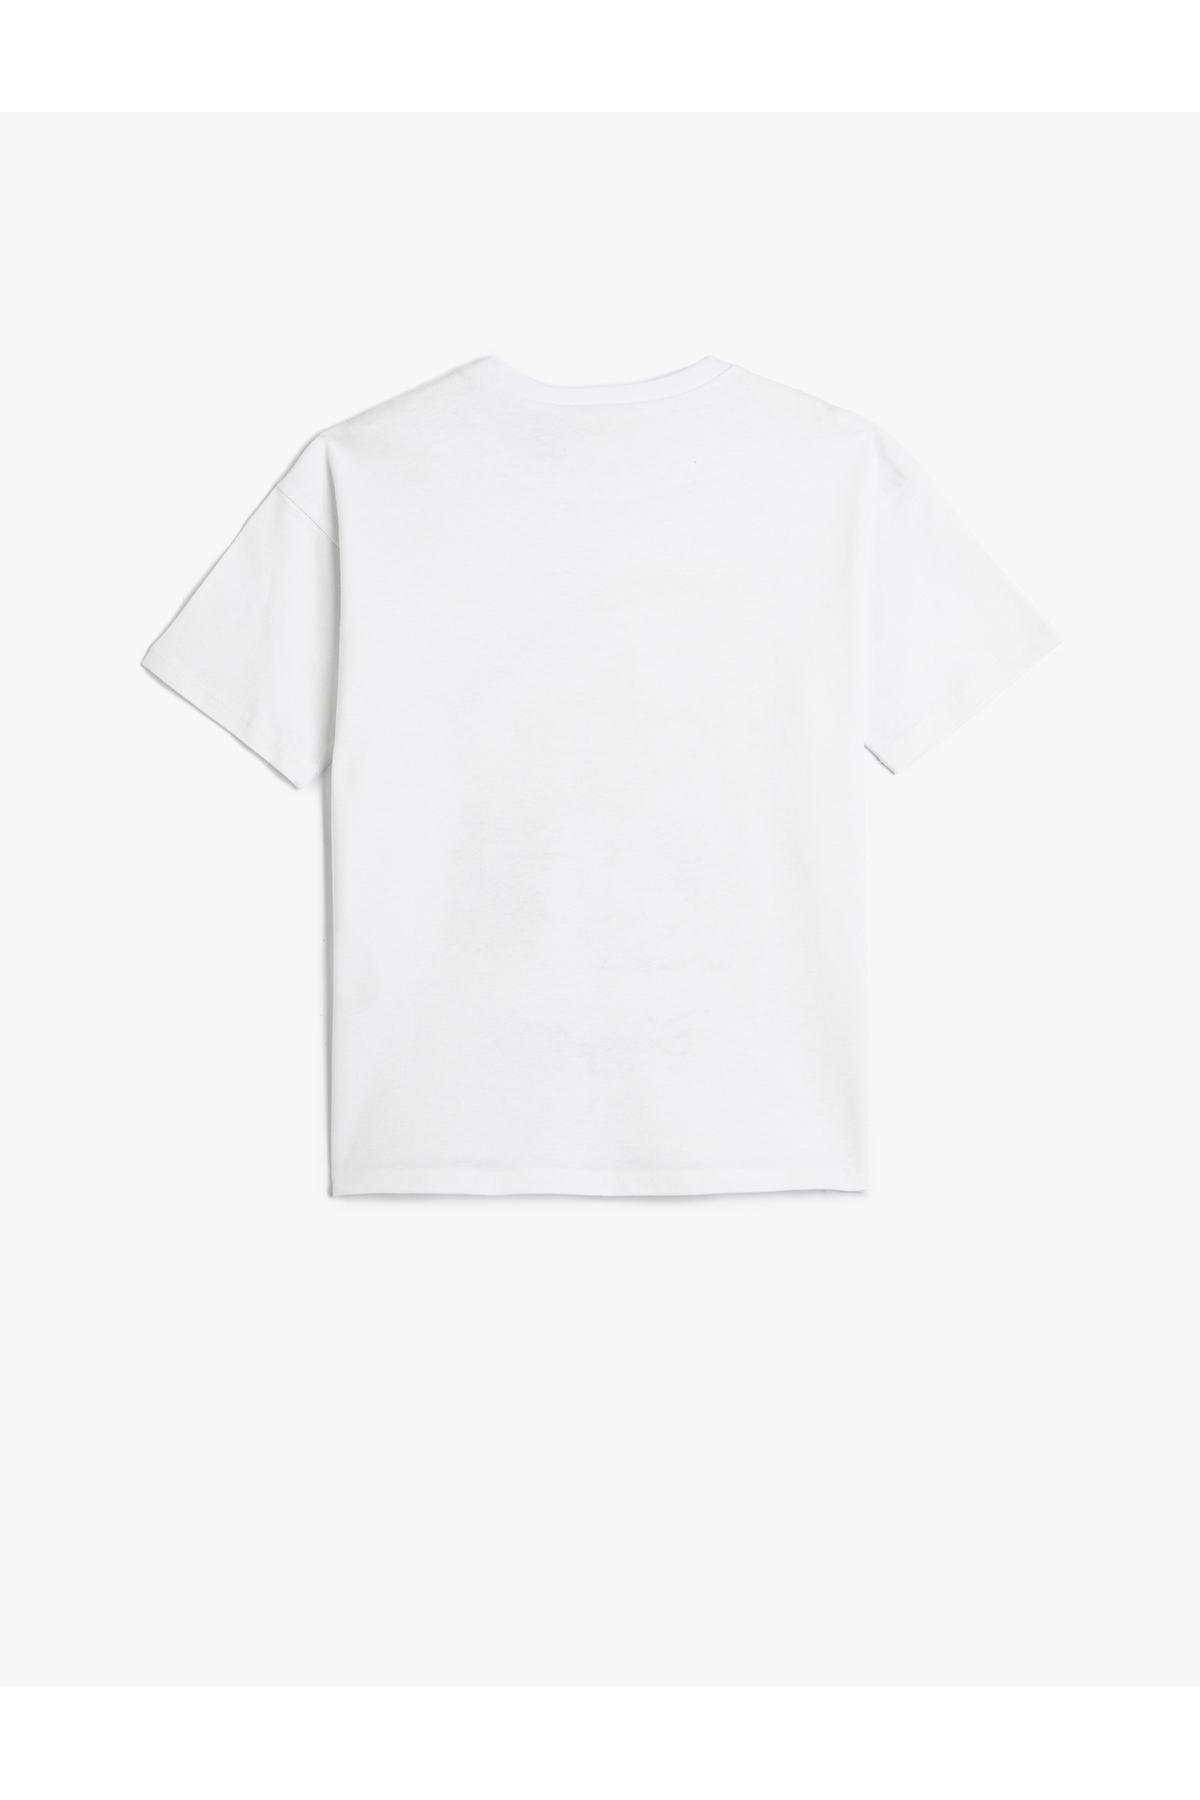 Koton - White Mickey Mouse T-Shirt